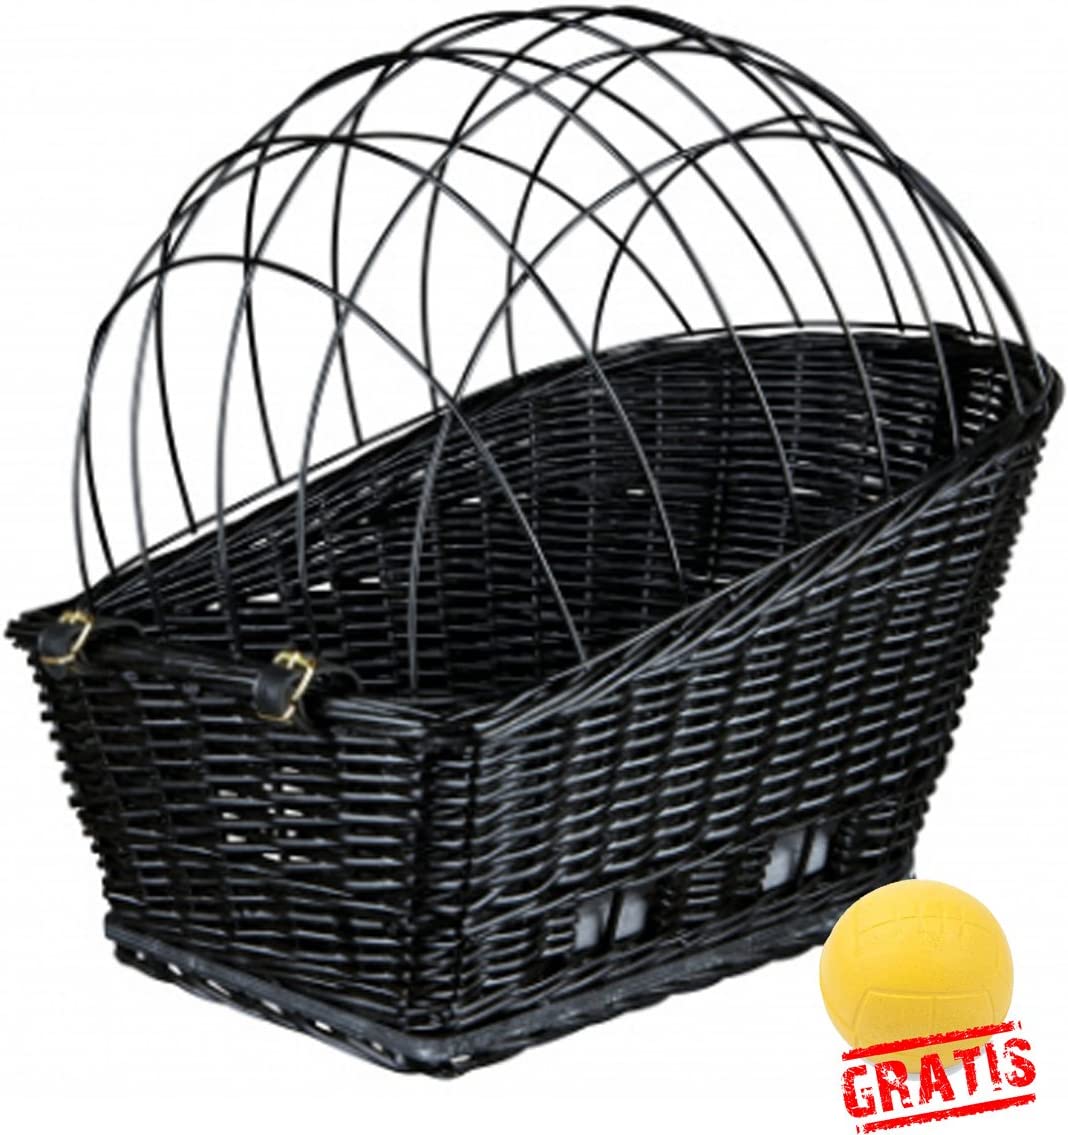  Trixie Friends On Tour 13117 + Ball gratis bicicleta cesta para perros Perros cesta perros cesta de mimbre 